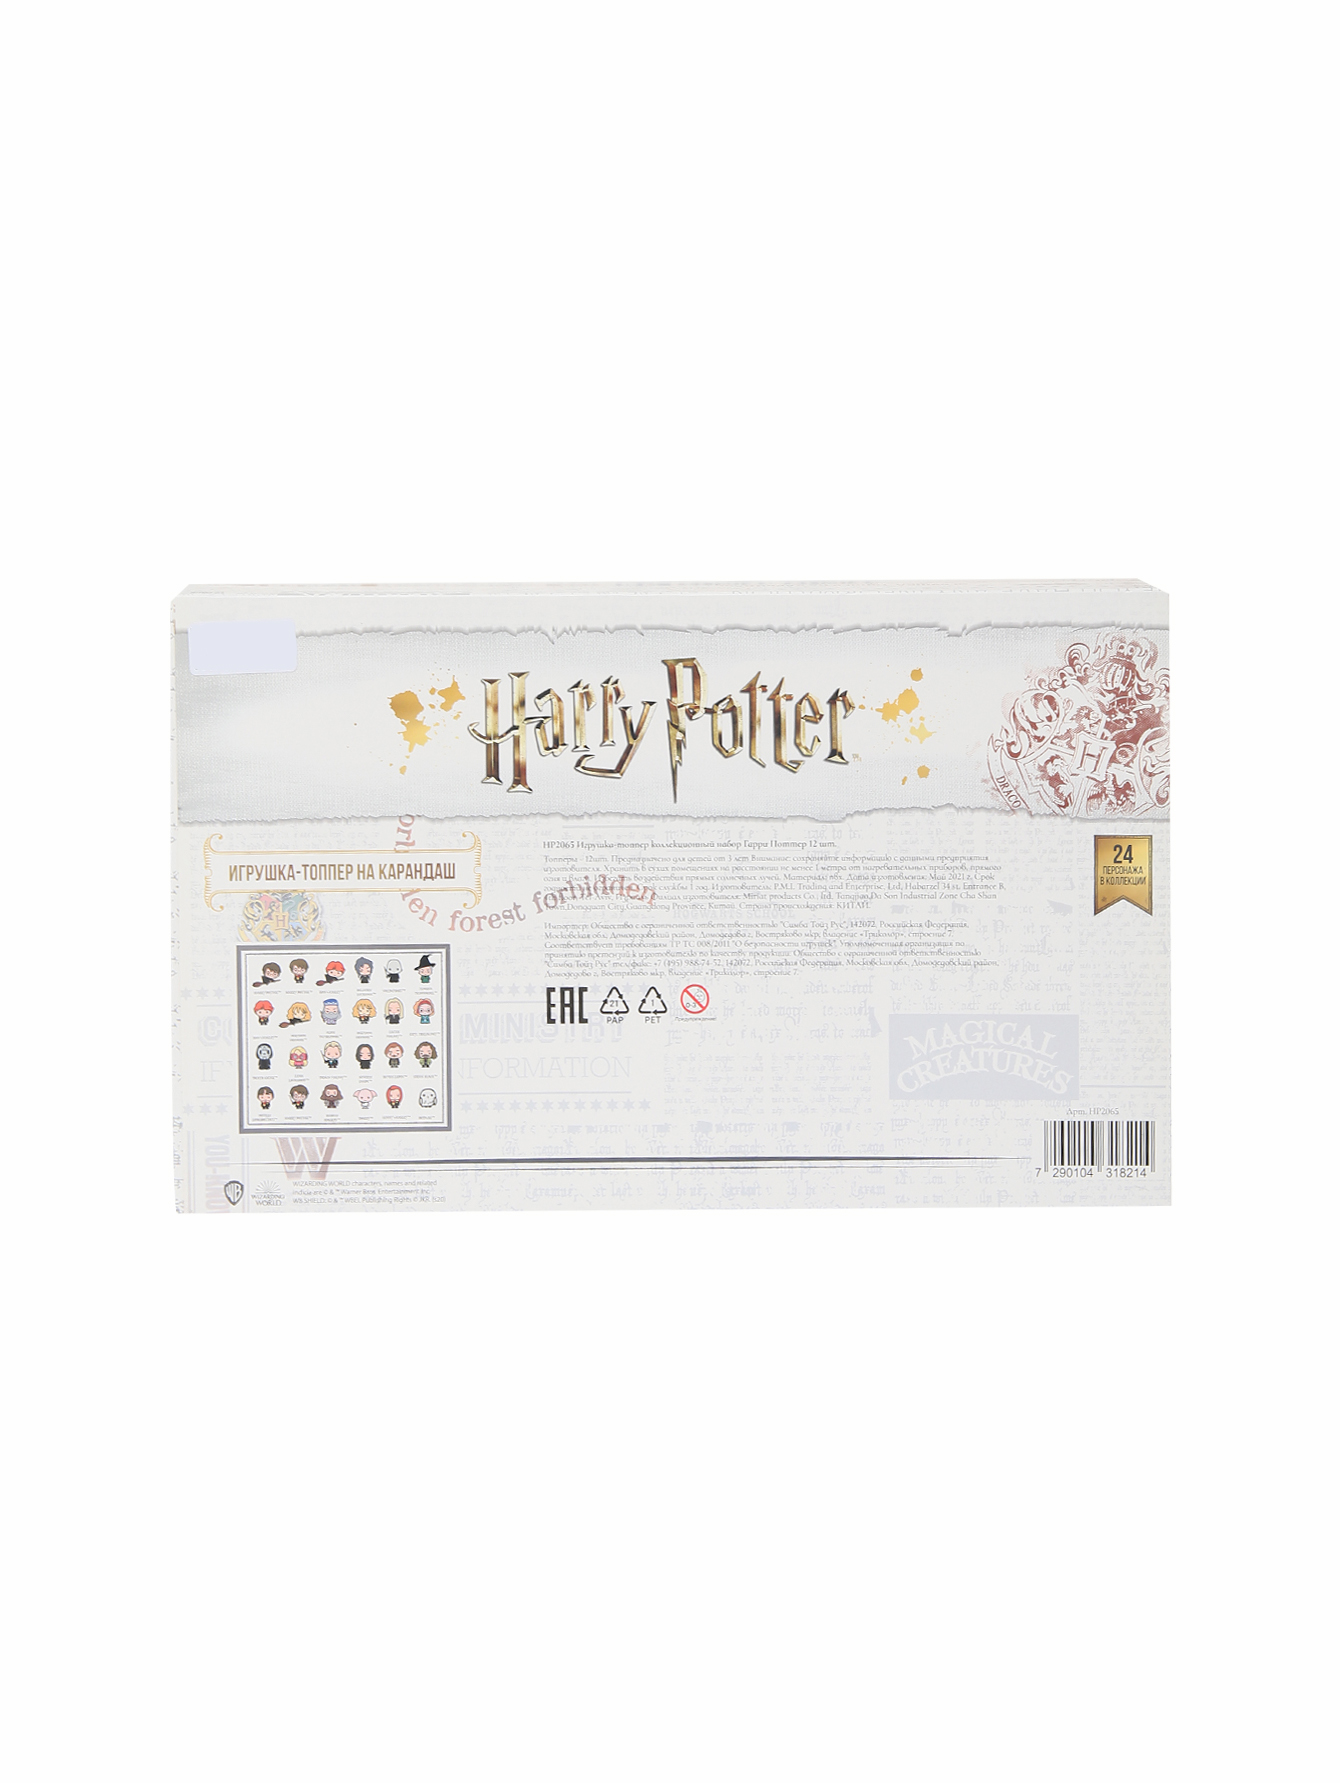 Игрушка-топпер коллекционный набор Гарри Поттер  - Общий вид